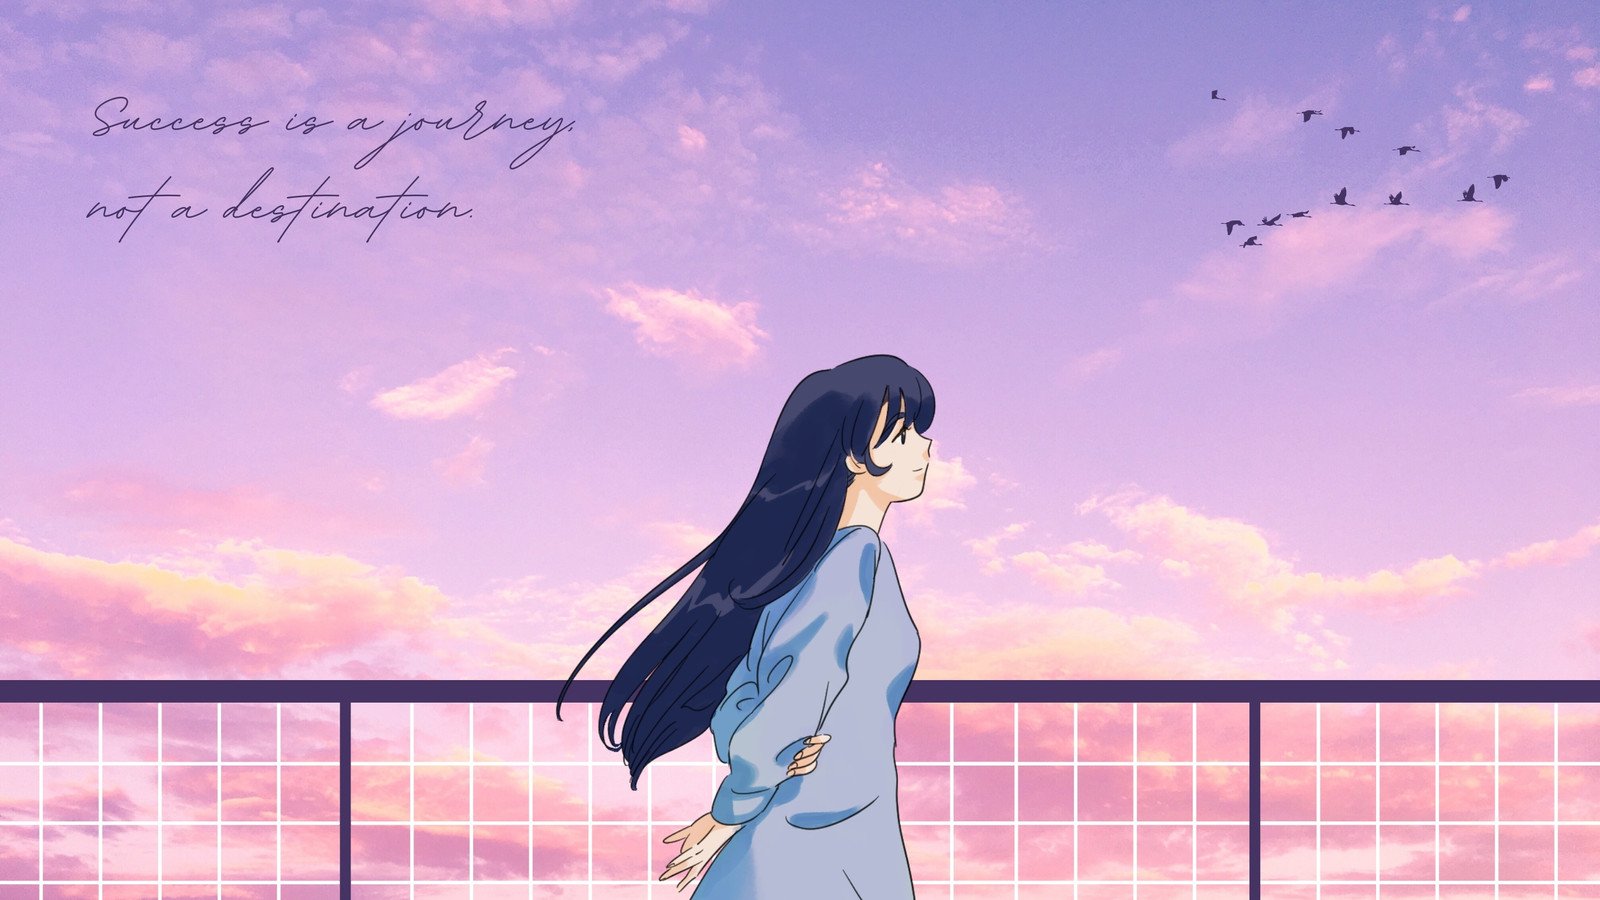 Soft anime wallpaper aesthetic | Anime backgrounds wallpapers, Scenery  wallpaper, Cute wallpaper backgrounds